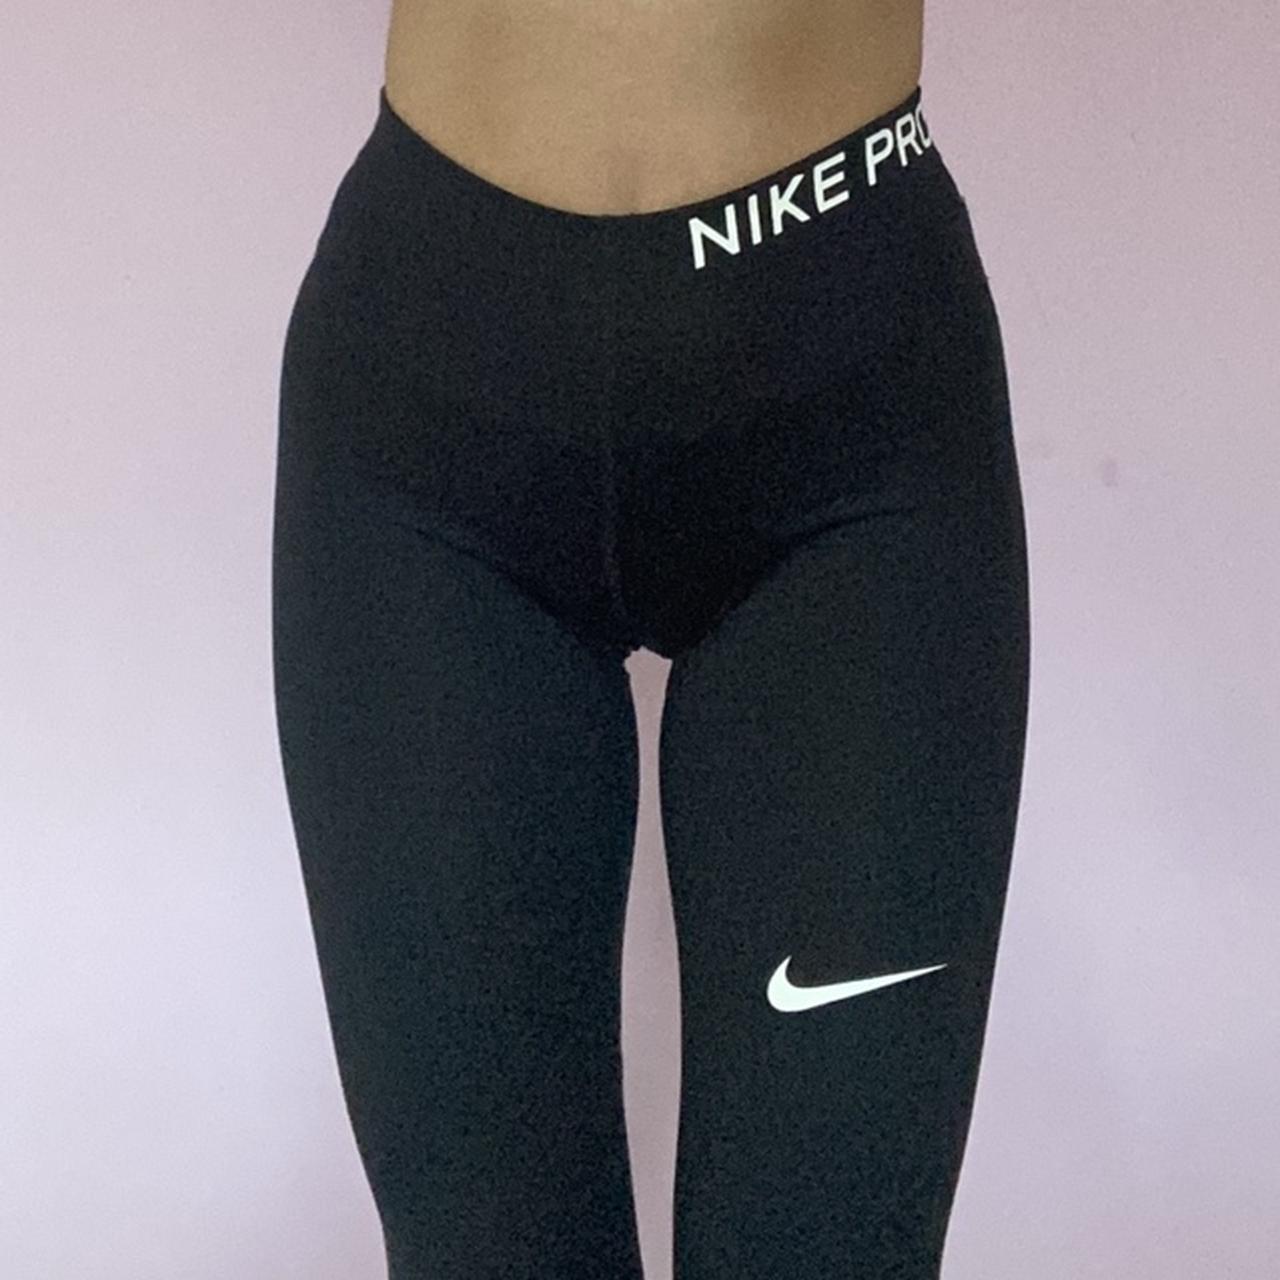 Nike Pro leggings. #nike #nikepro #nikeleggings - Depop